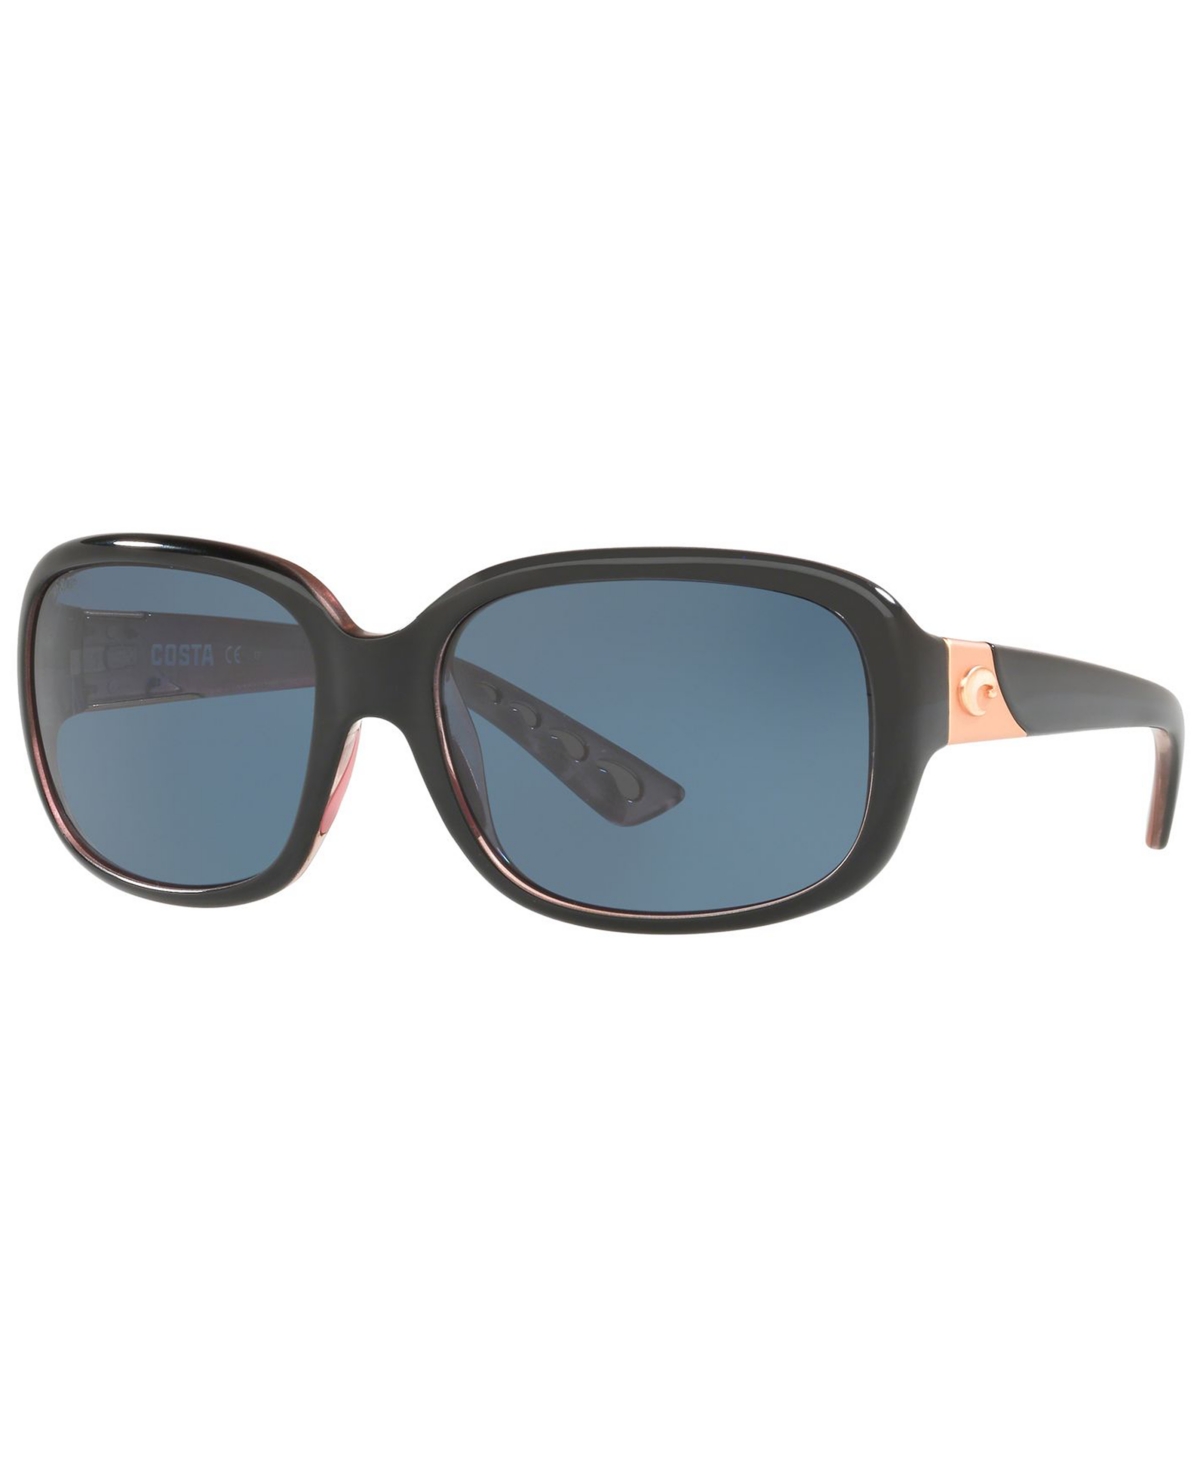 Polarized Sunglasses, Gannet 58 - TORTOISE BROWN/ COPPER POLAR